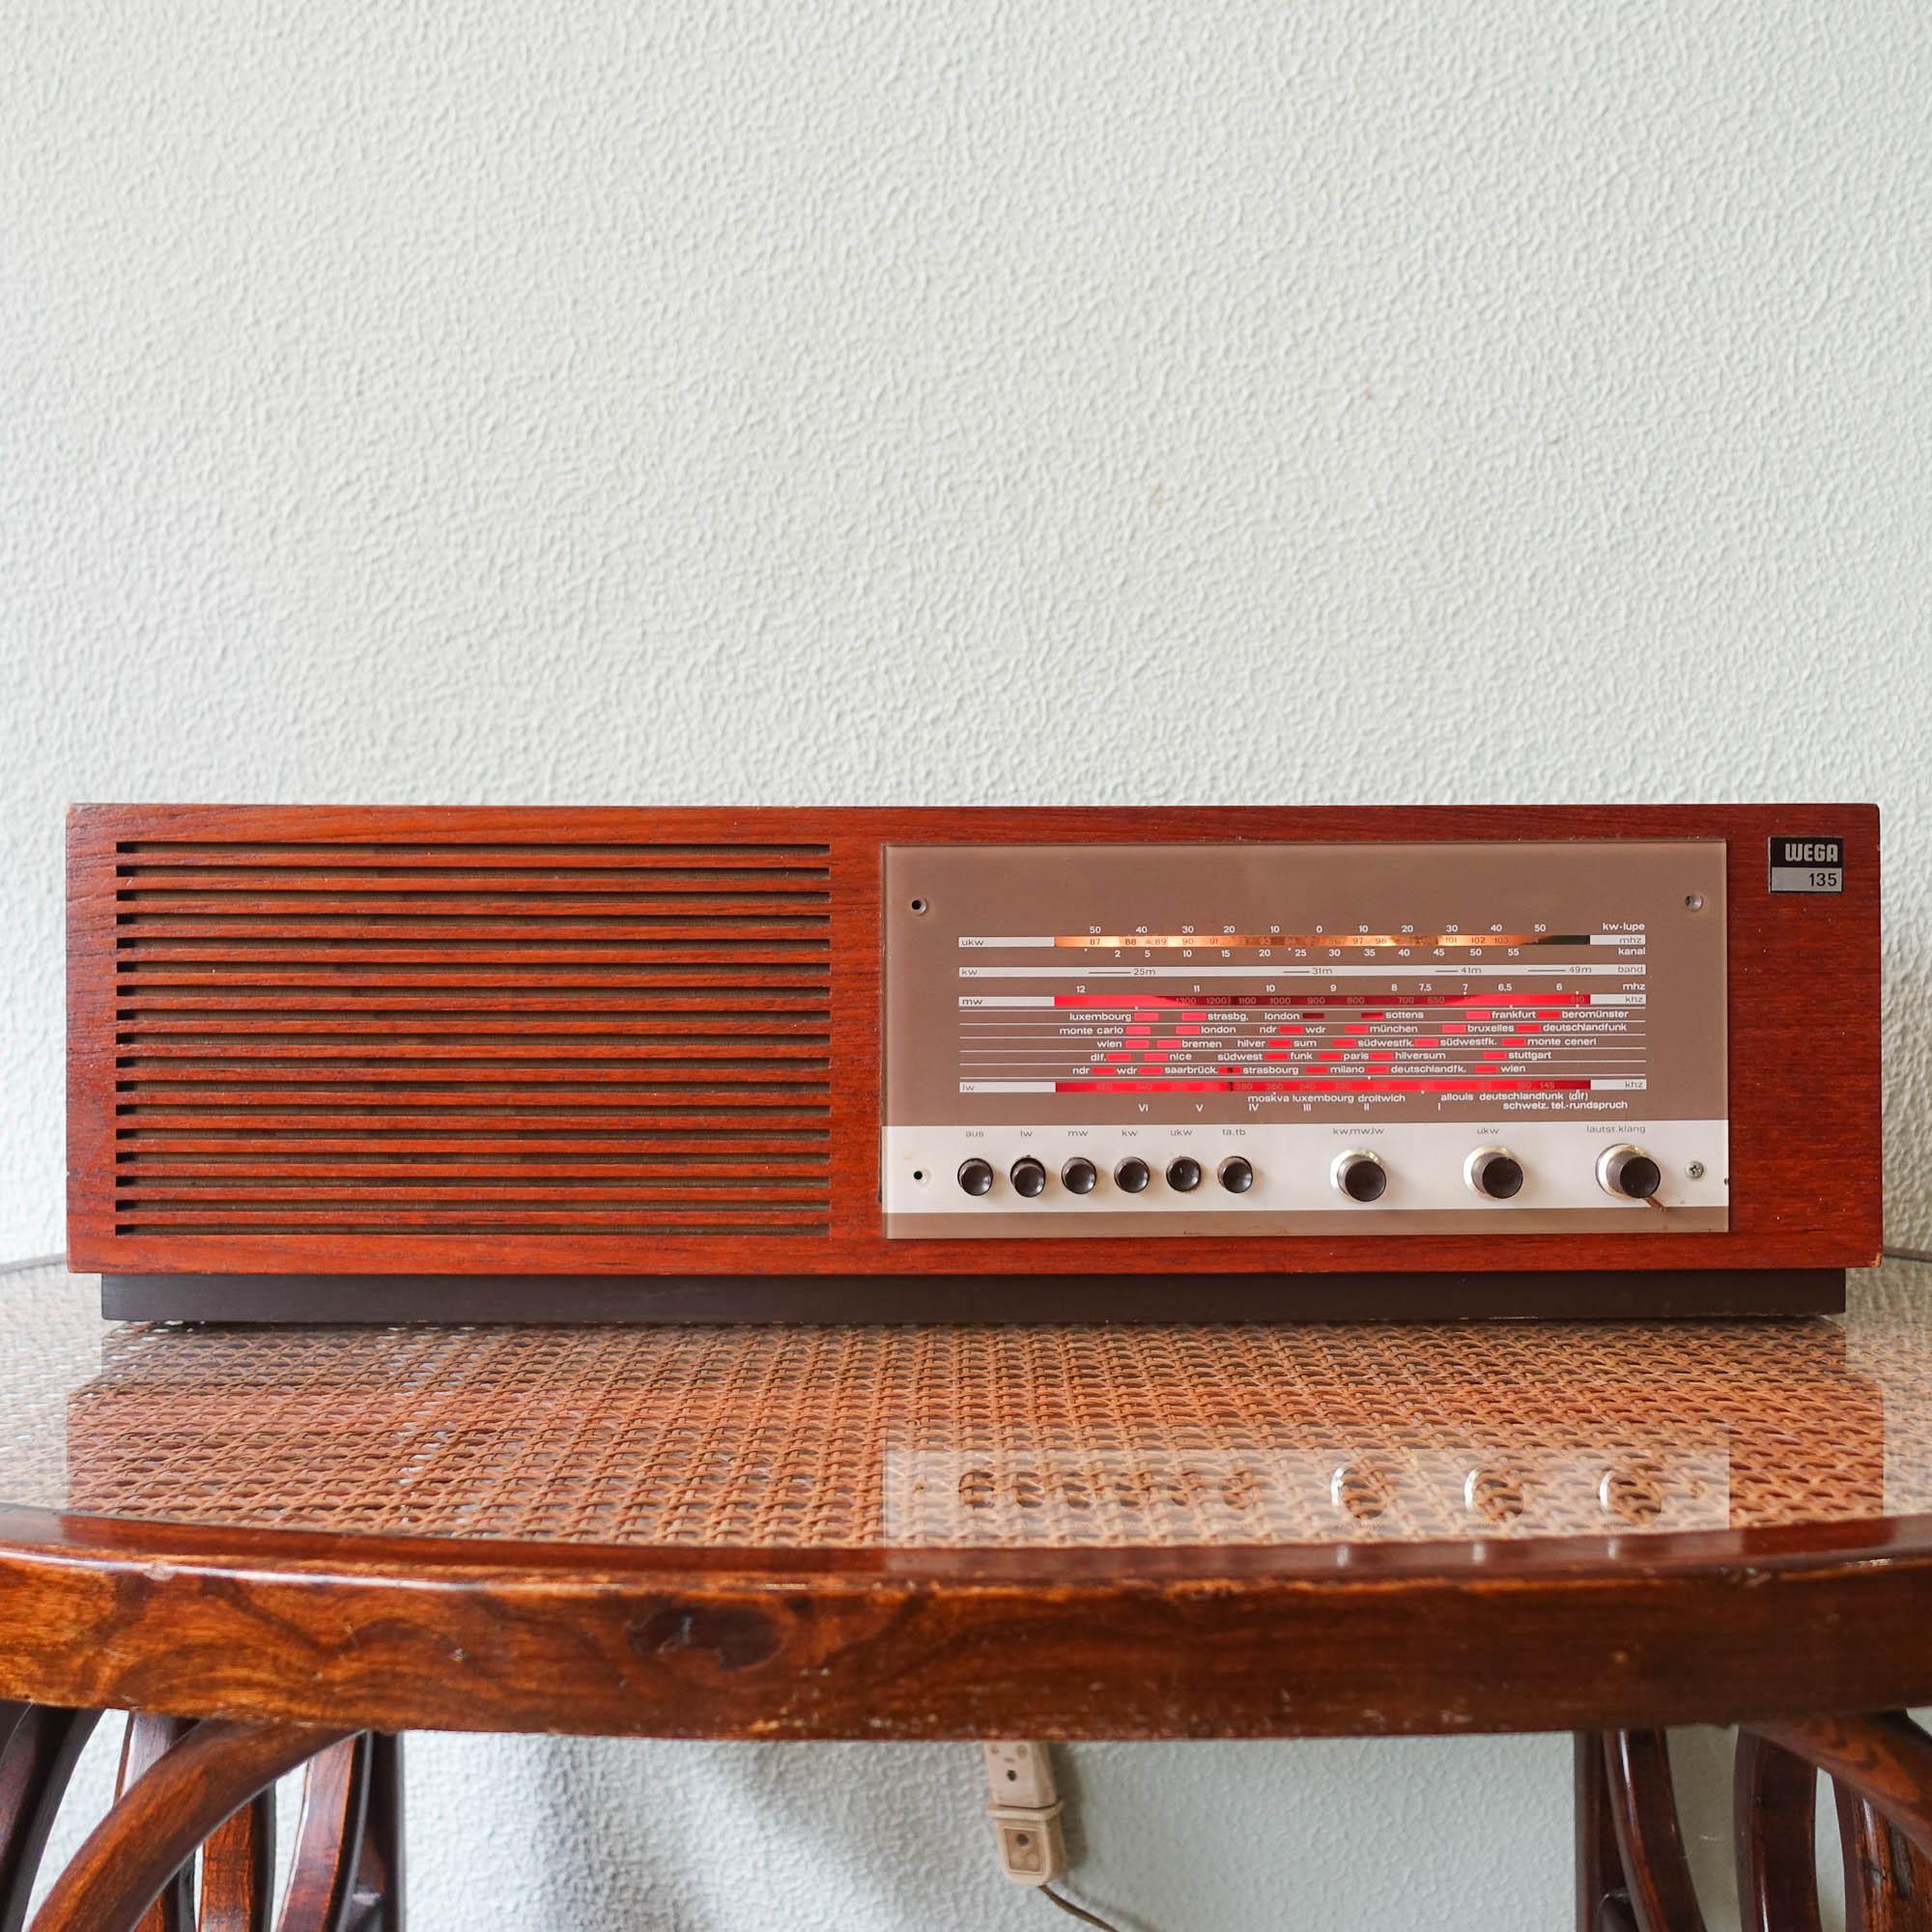 Dieses Radio, Typ 135, wurde von Wega in Westdeutschland in den 1960er Jahren hergestellt. Mit einem Teakholz-Gehäuse, hat es Rundfunk, Langwelle, Kurzwelle plus FM oder UHF. Guter, empfindlicher FM-Empfang und gute Klangqualität. In originalem und